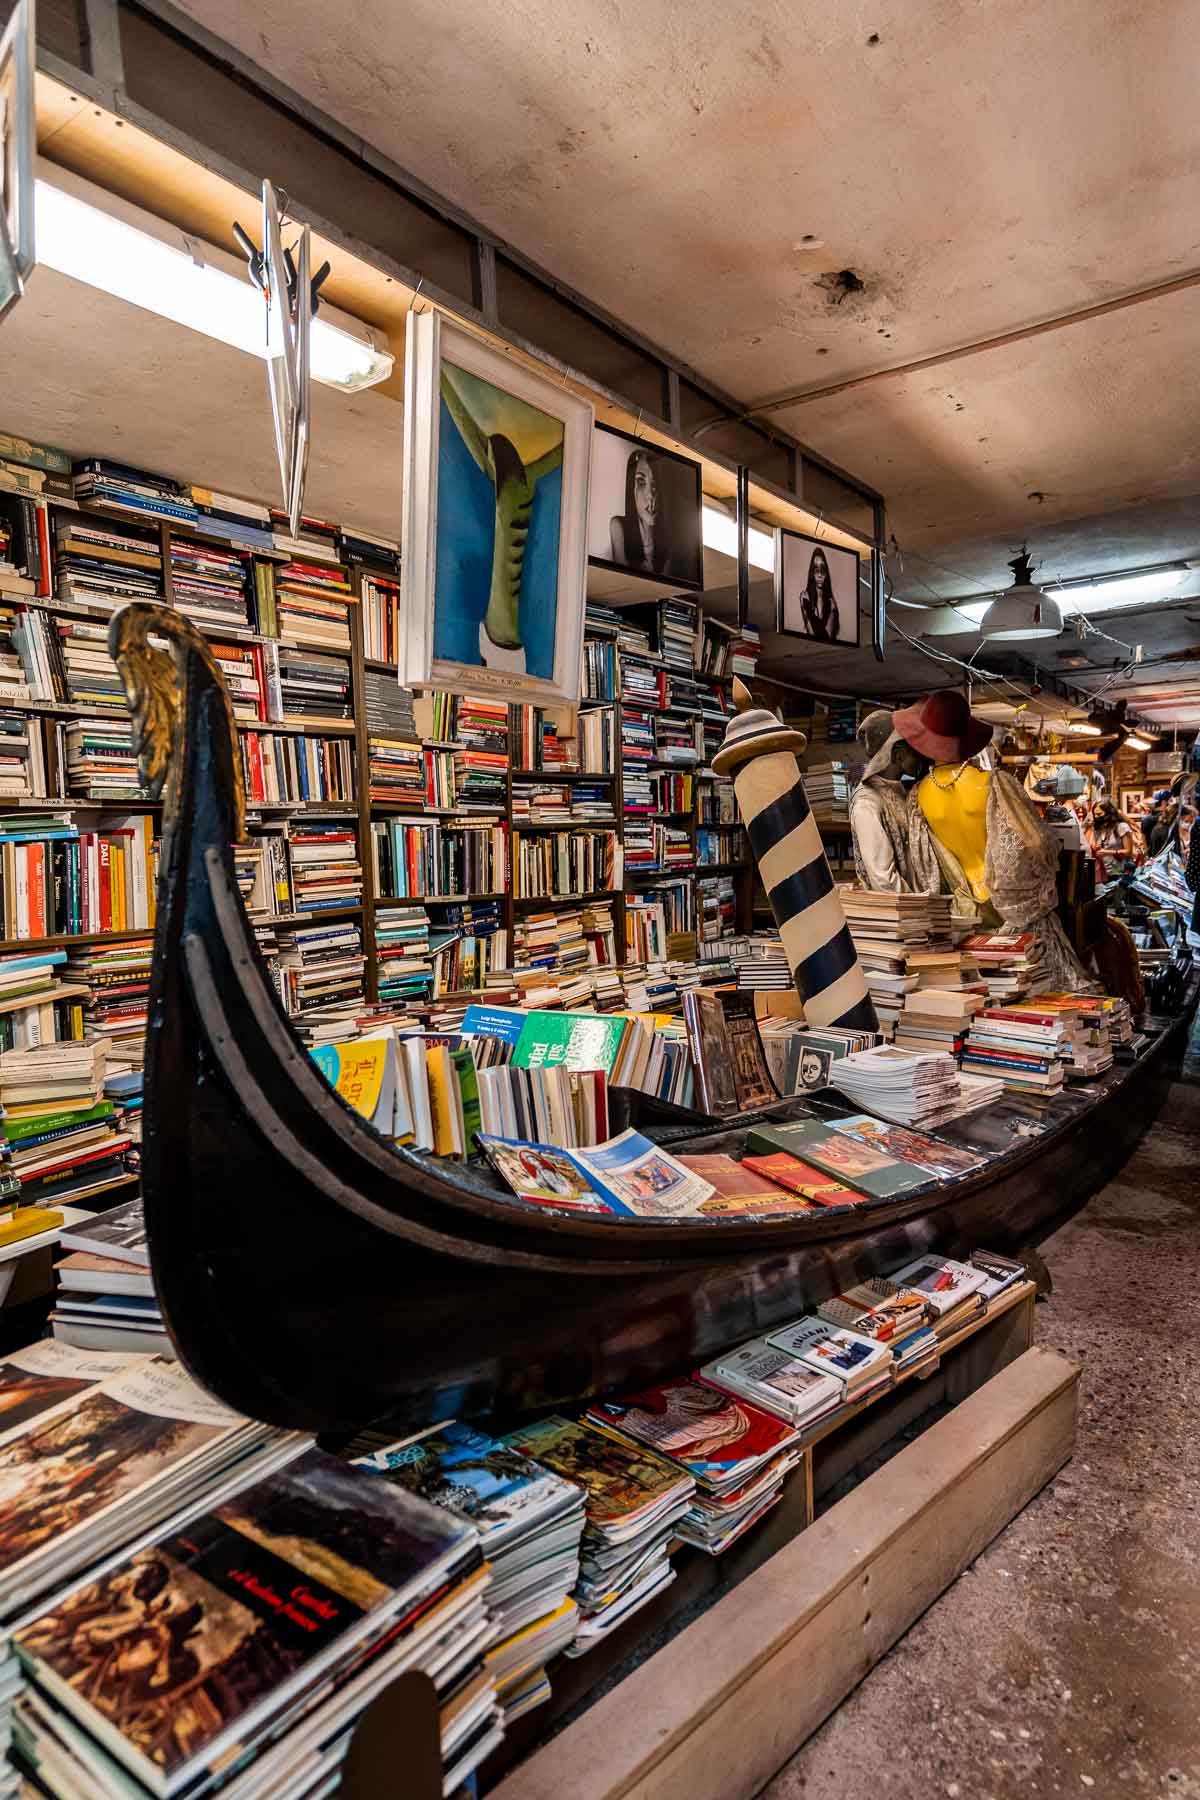 Libreria Acqua Alta in Venice, Italy